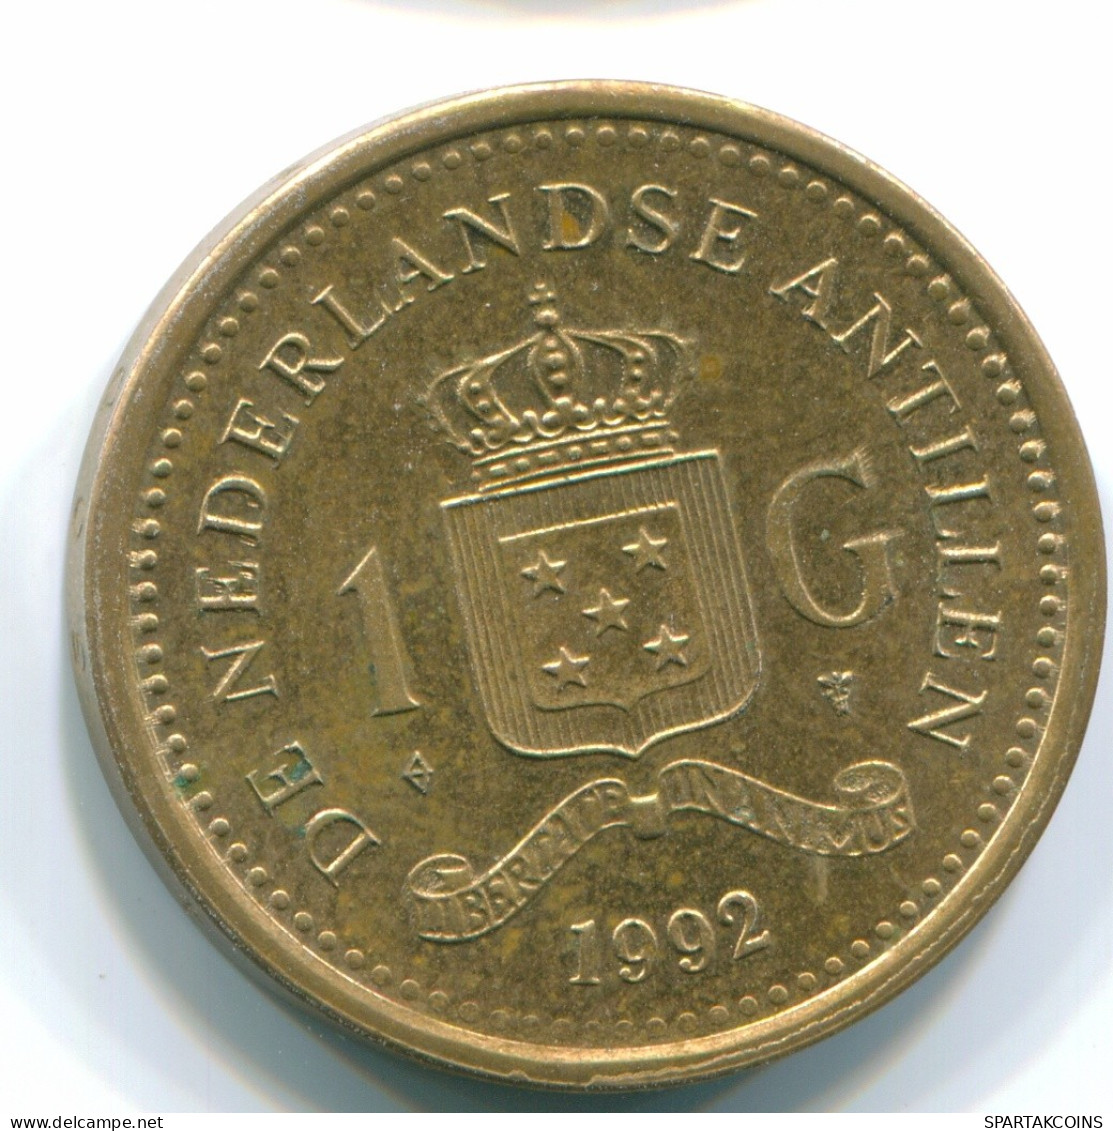 1 GULDEN 1992 NETHERLANDS ANTILLES Aureate Steel Colonial Coin #S12149.U.A - Niederländische Antillen